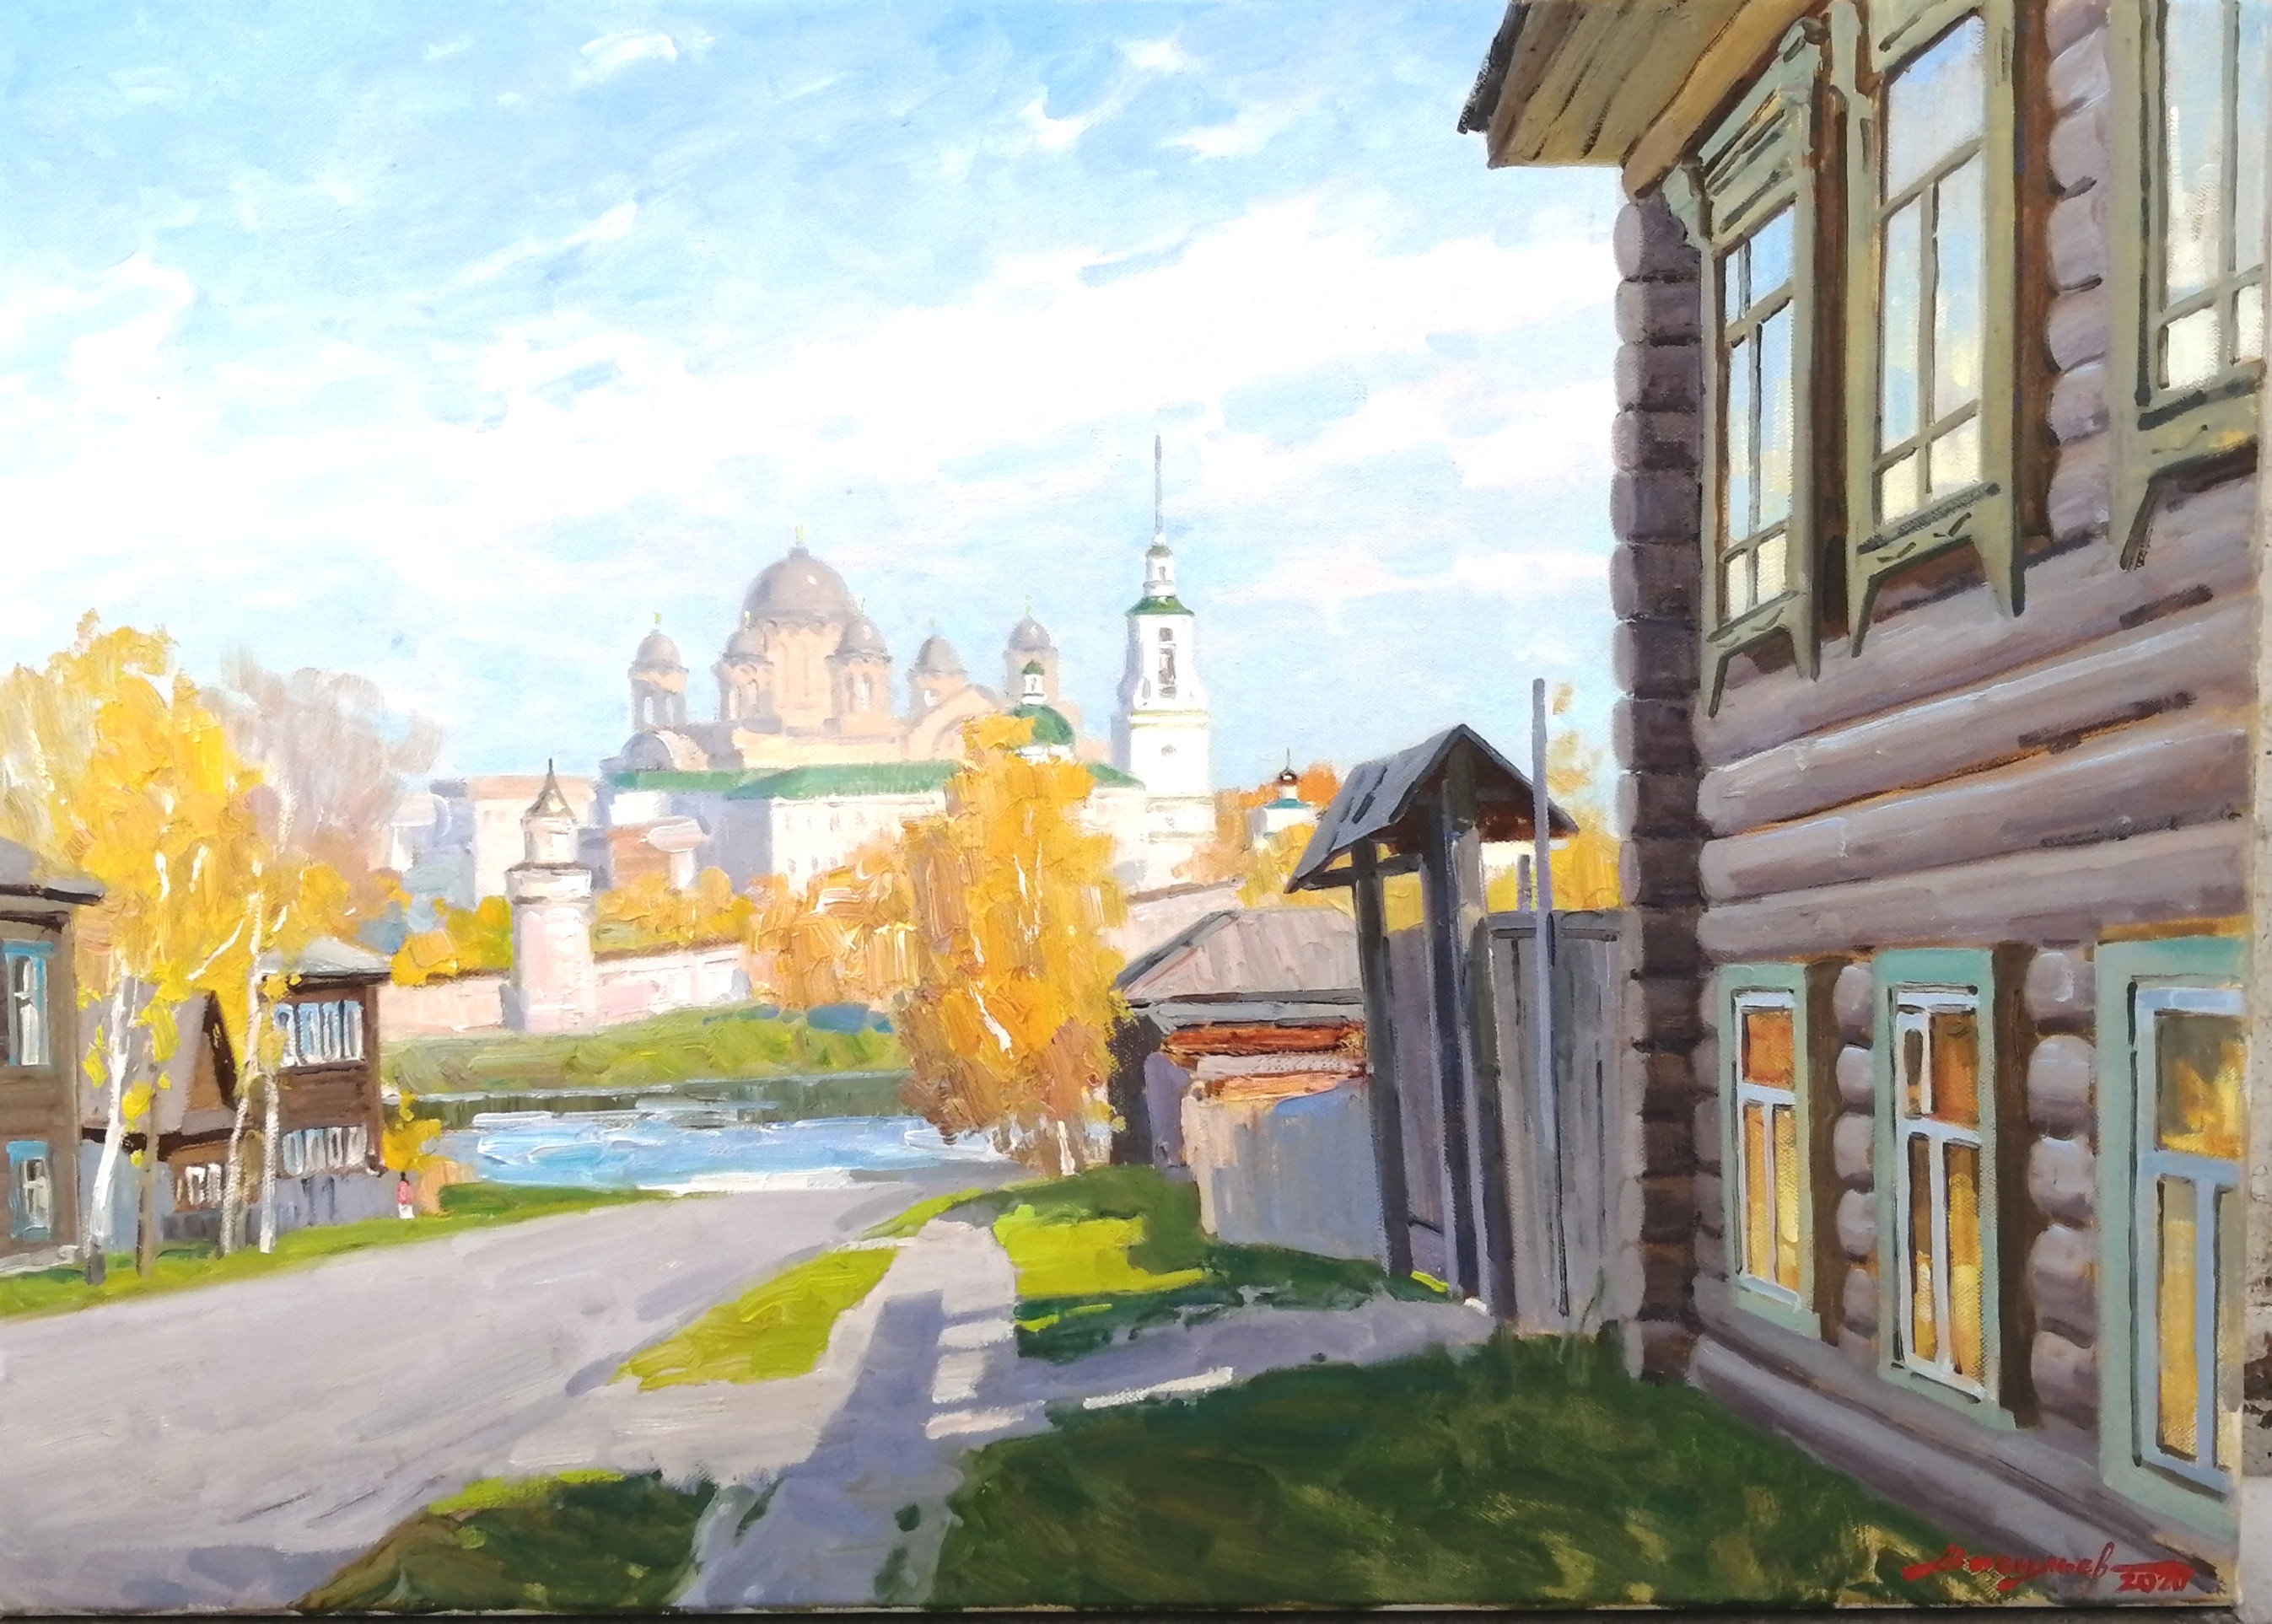 Indian Summer in Verkhoturye - 1, Dmitry Vasiliev, Buy the painting Oil